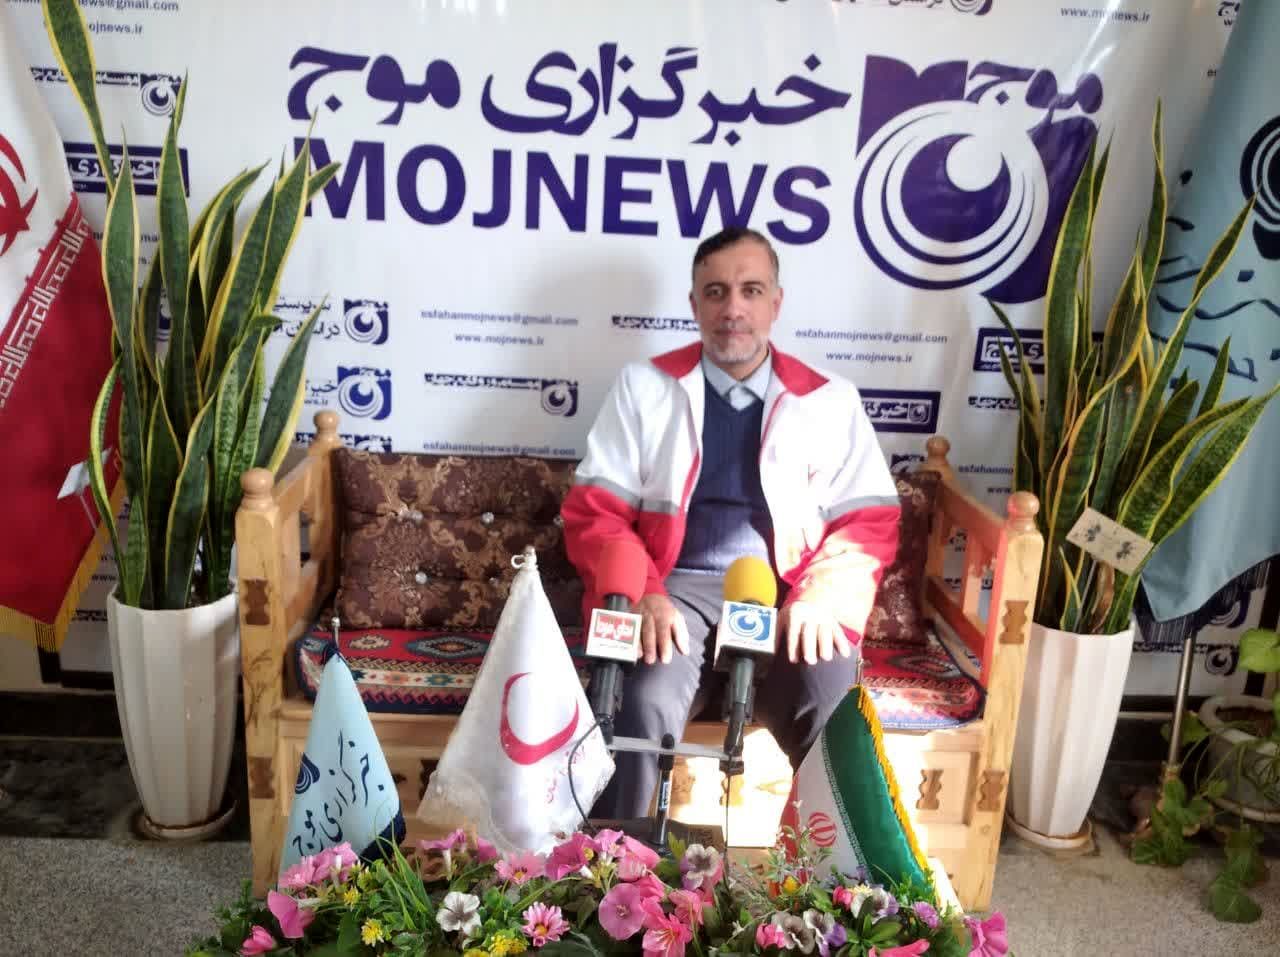 بازدید مدیرعامل جمعیت هلال احمر استان اصفهان از دفتر خبرگزاری موج